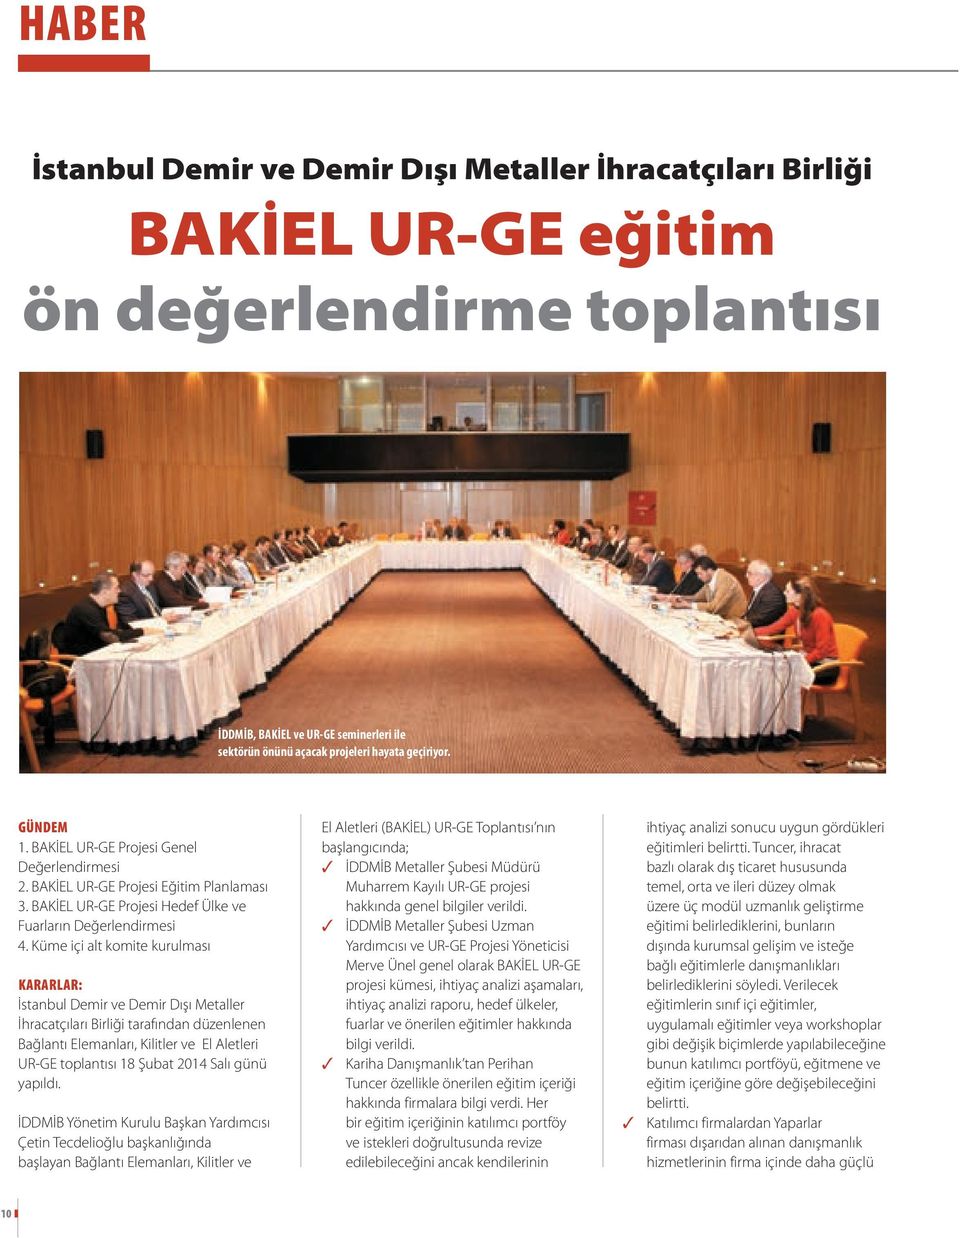 Küme içi alt komite kurulması KARARLAR: İstanbul Demir ve Demir Dışı Metaller İhracatçıları Birliği tarafından düzenlenen Bağlantı Elemanları, Kilitler ve El Aletleri UR-GE toplantısı 18 Şubat 2014